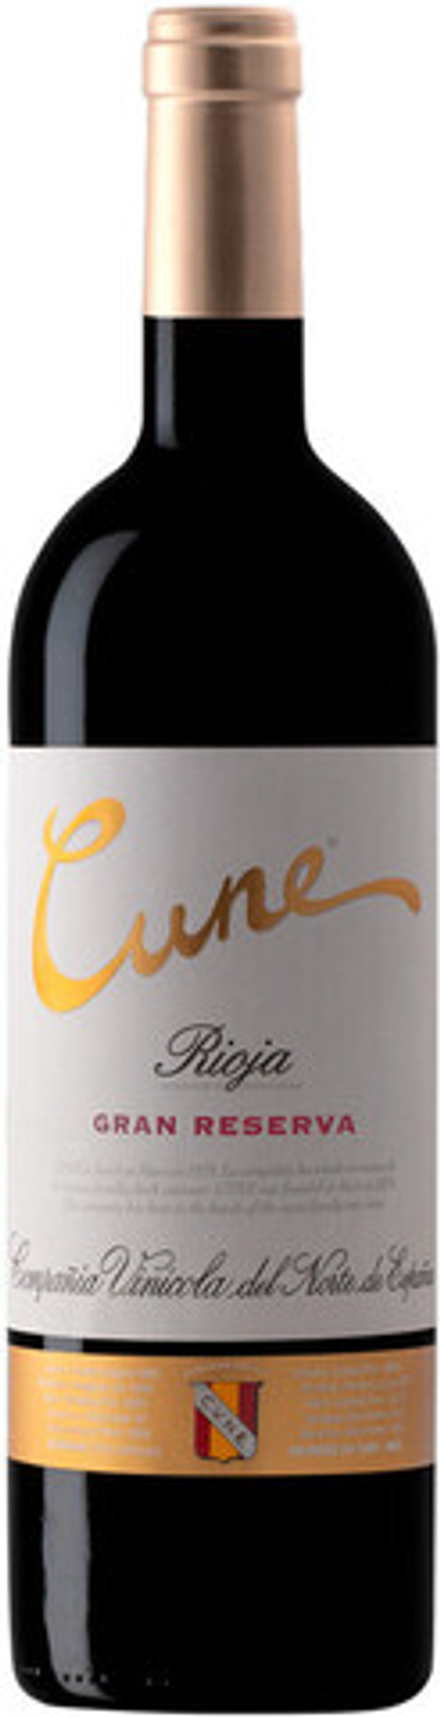 Вино Cune Gran Reserva Rioja DOC, 0,75 л.